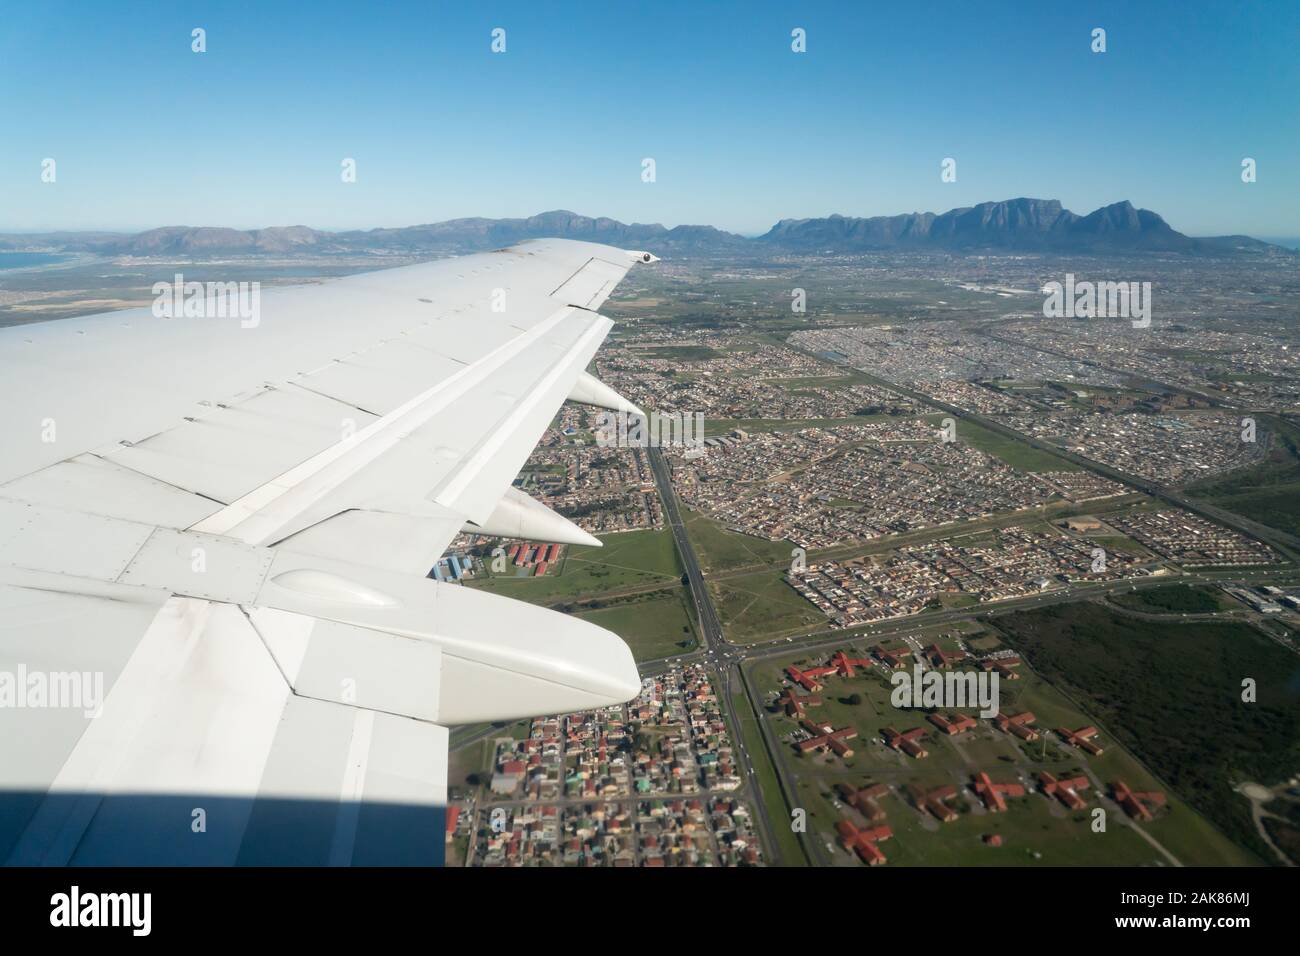 Blick von einem Flugzeug über den Flügel, aus der Vogelperspektive auf die Landschaft der Cape Flats mit Tafelberg im Hintergrund Kapstadt, Südafrika Stockfoto